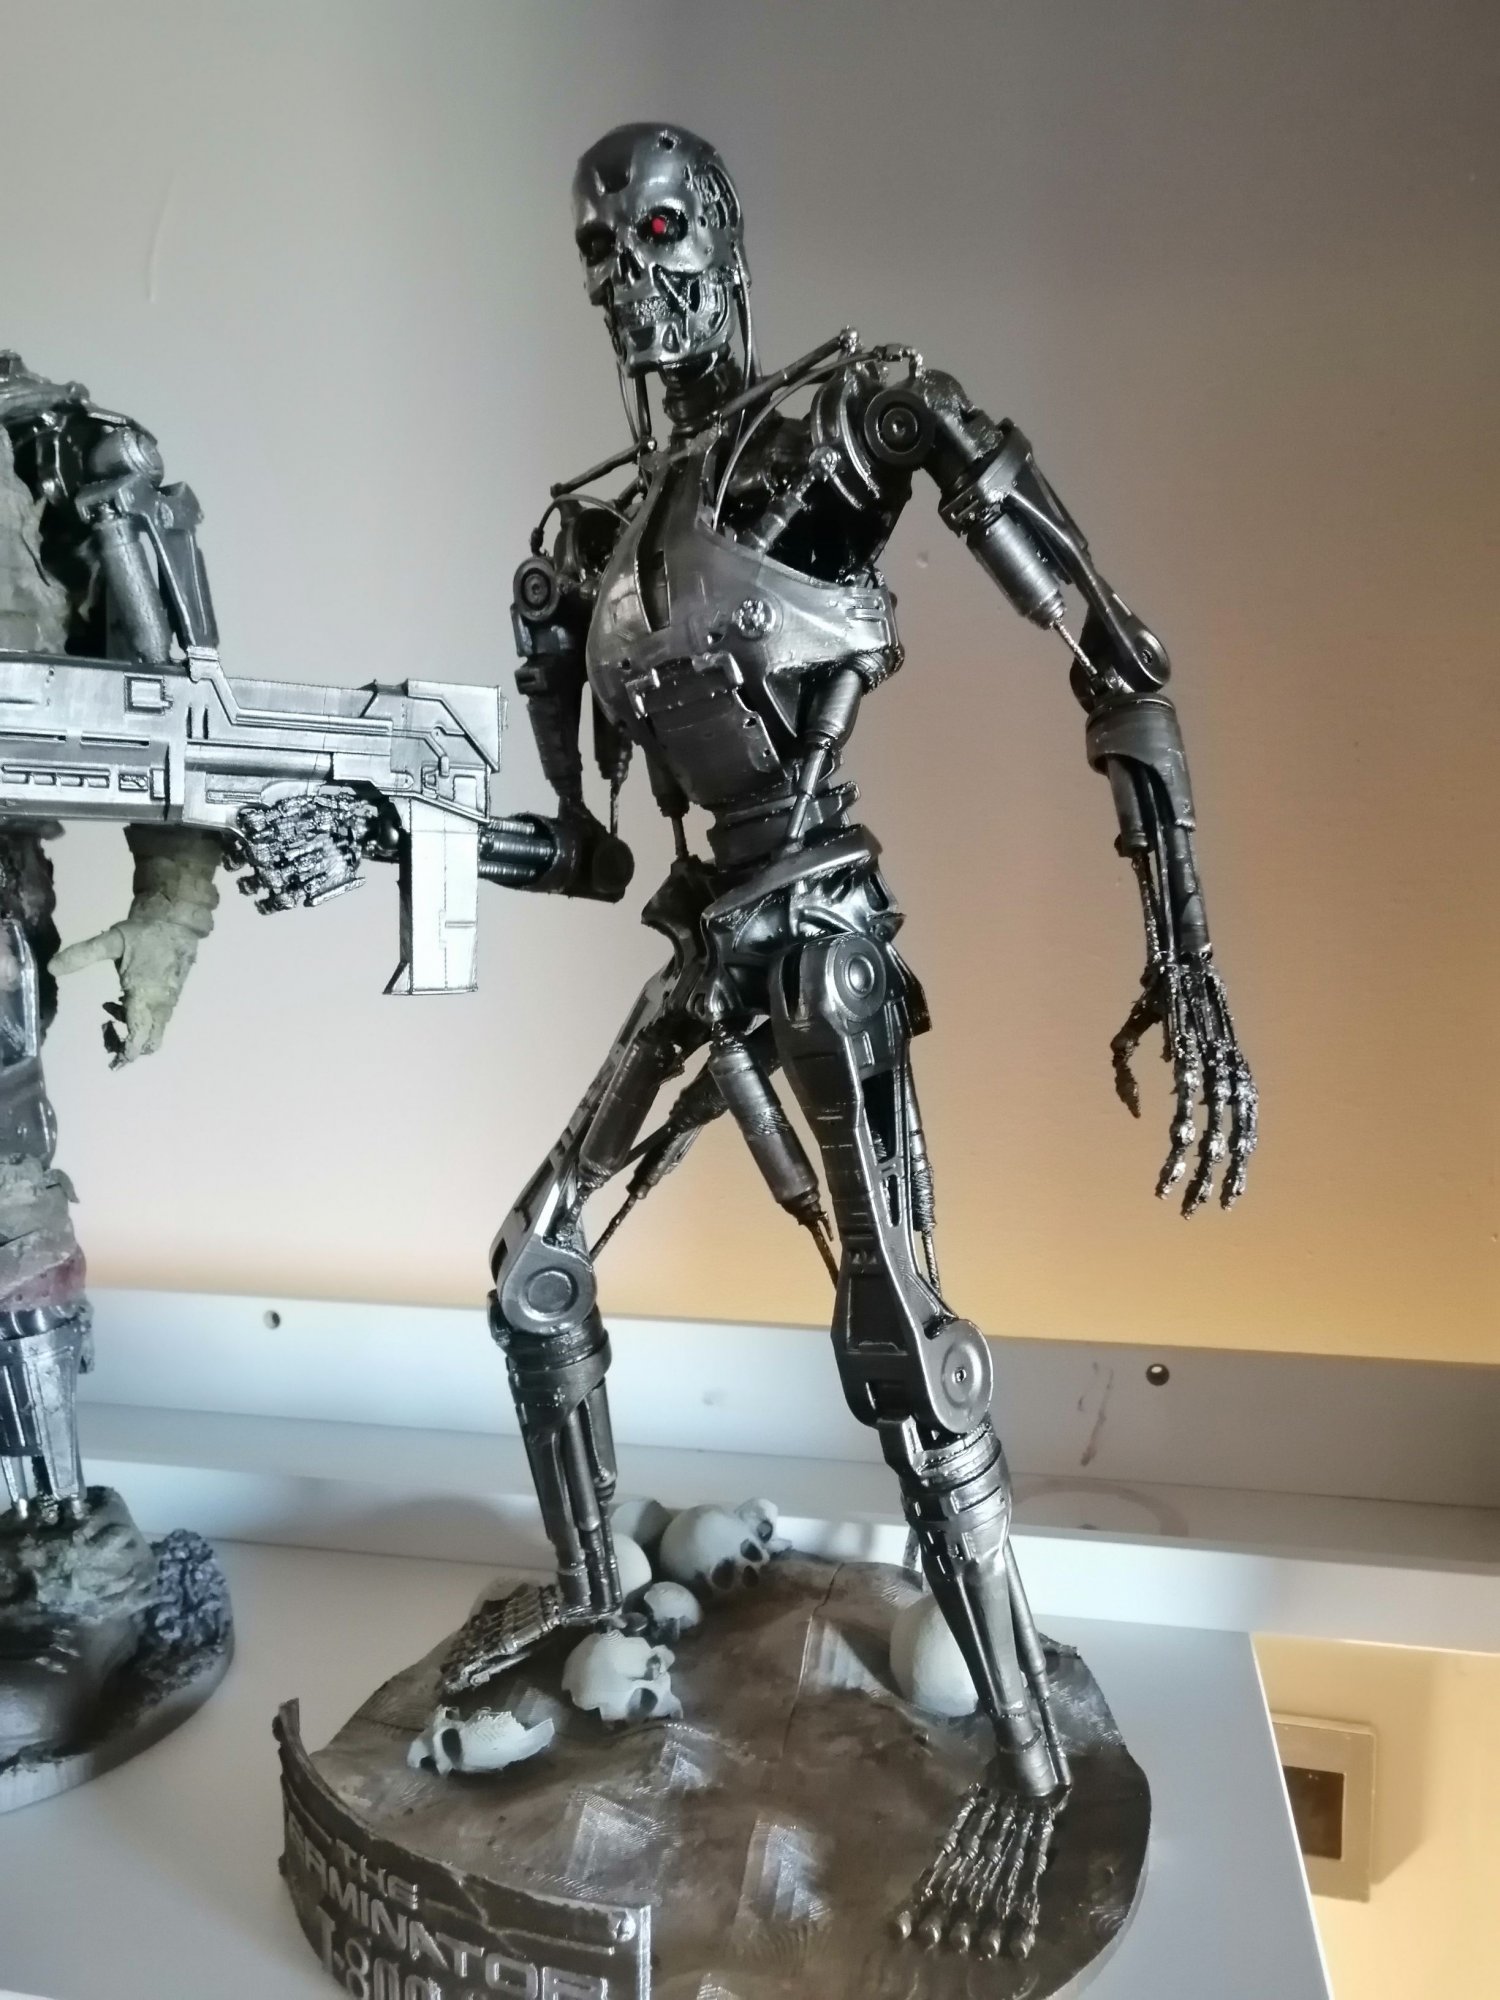 terminator endoskeleton figure